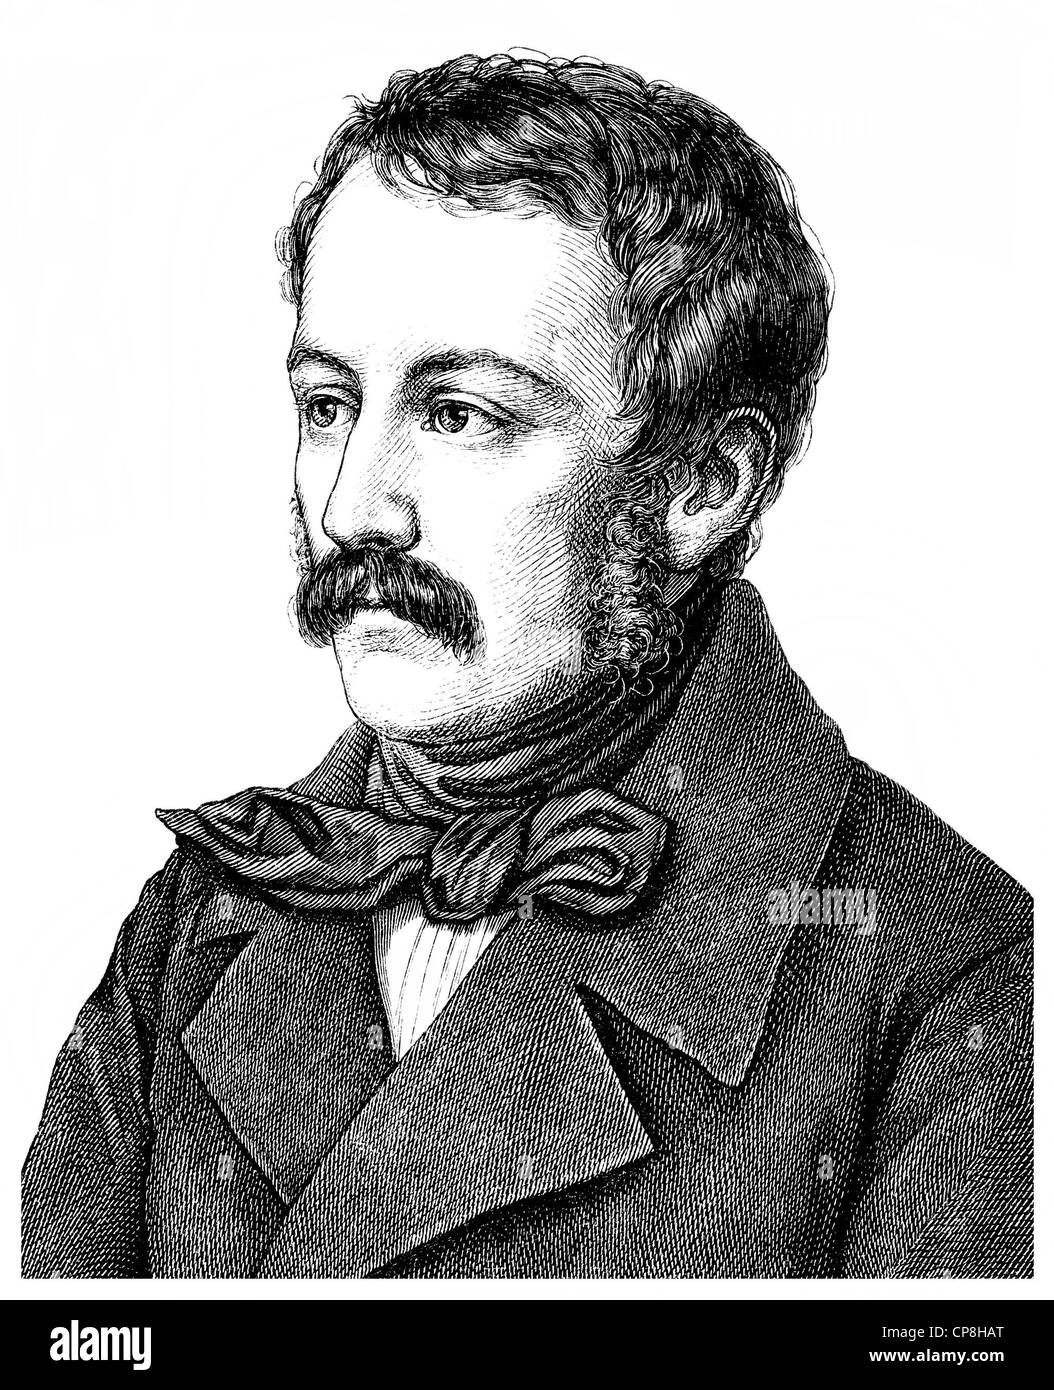 Nikolaus Lenau ou Nikolaus Franz Niembsch Edler von Strehlenau, 1802 - 1850, un écrivain autrichien de l'époque Biedermeier, Historis Banque D'Images